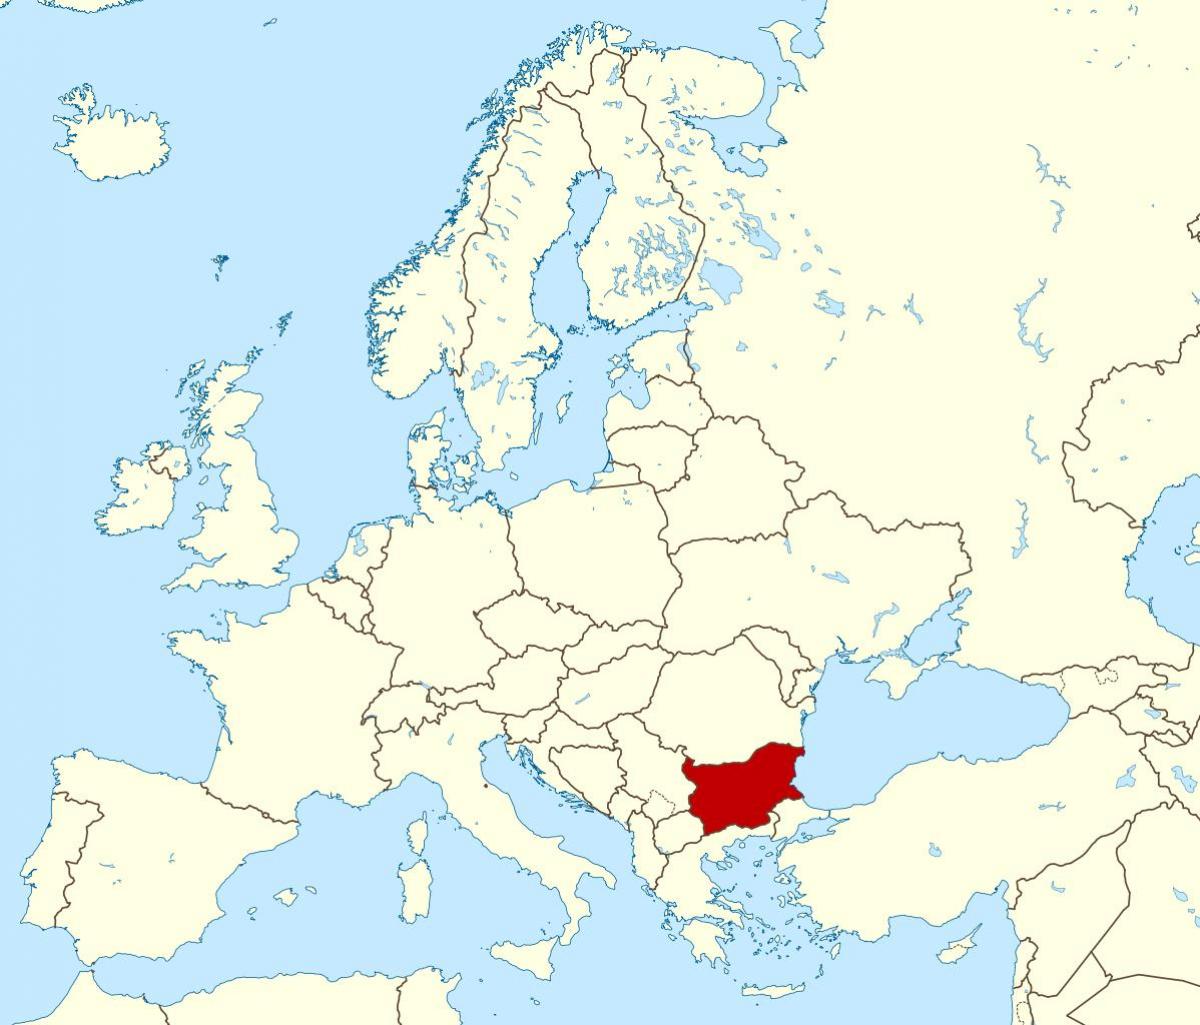 خريطة تبين بلغاريا